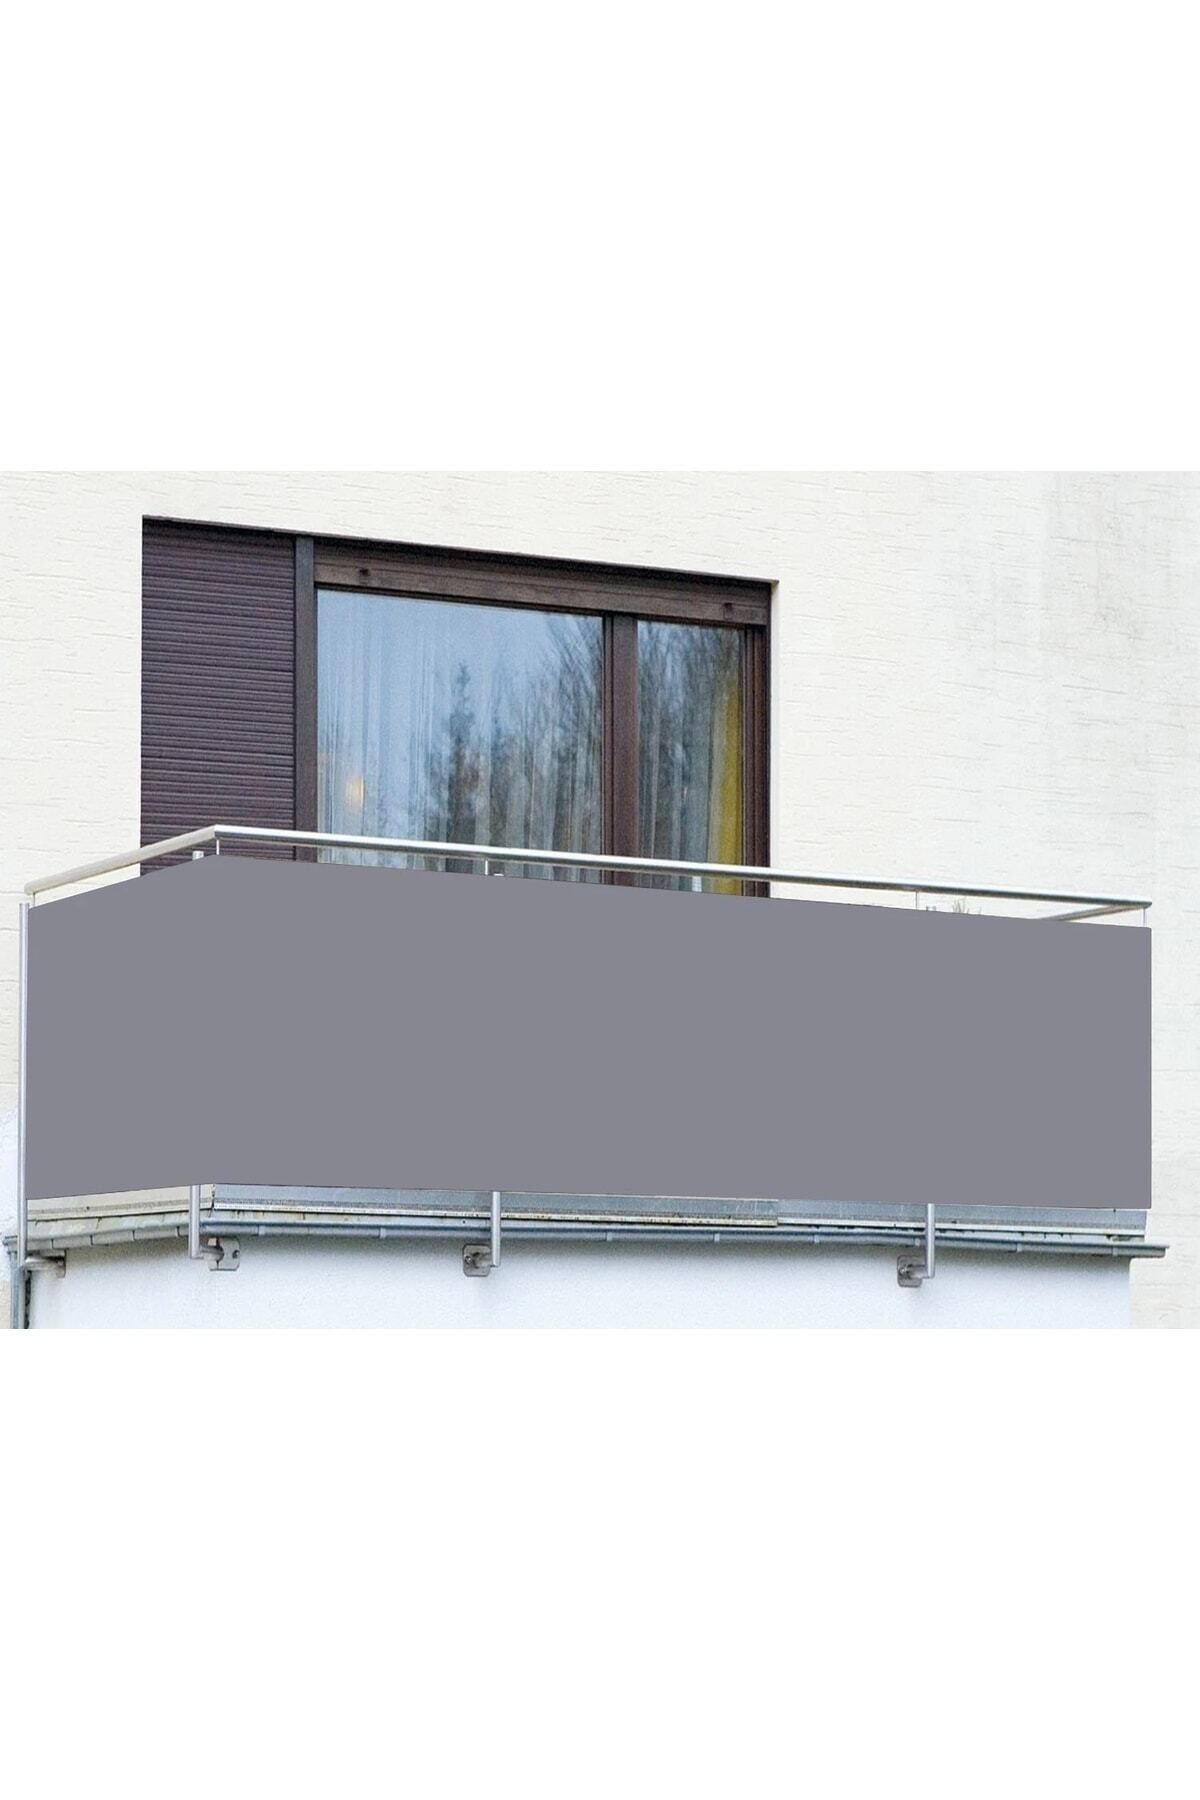 BİLGİÇÇADIR 4m X 70cm Gri Renk Polyester Balkon Demiri Brandası Su Geçirmez 1.sınıf 650gr/m2